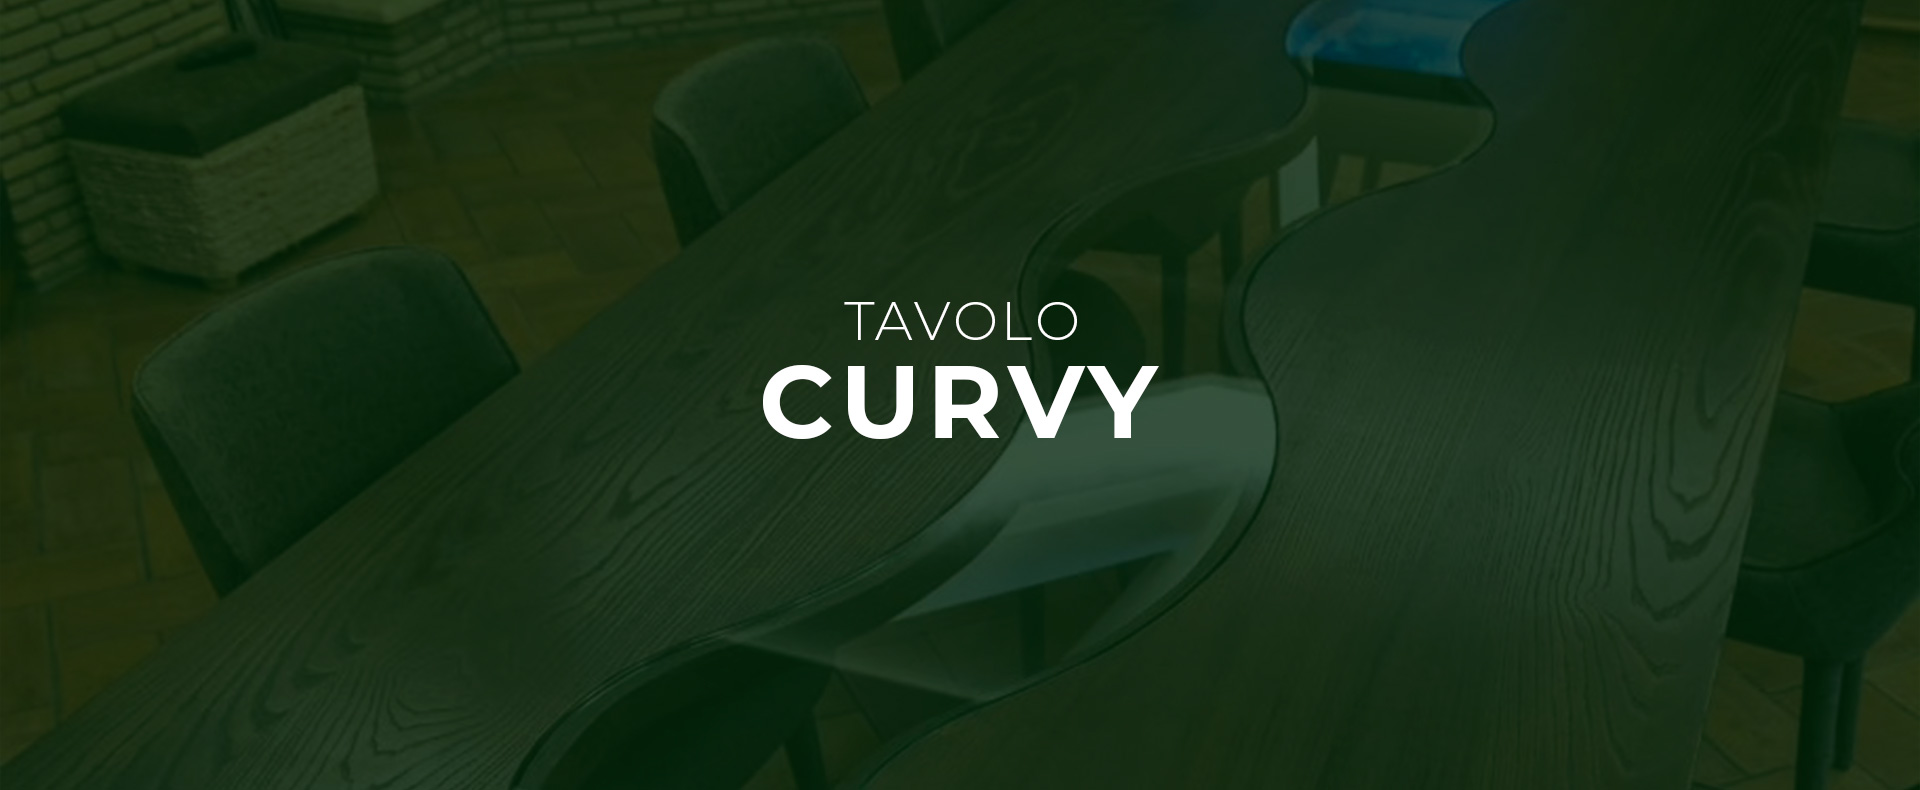 tavolo-curvy-in-legno-e-vetro-design-industrial-industriale-arredamento-contemporaneo-velletri-roma-italia